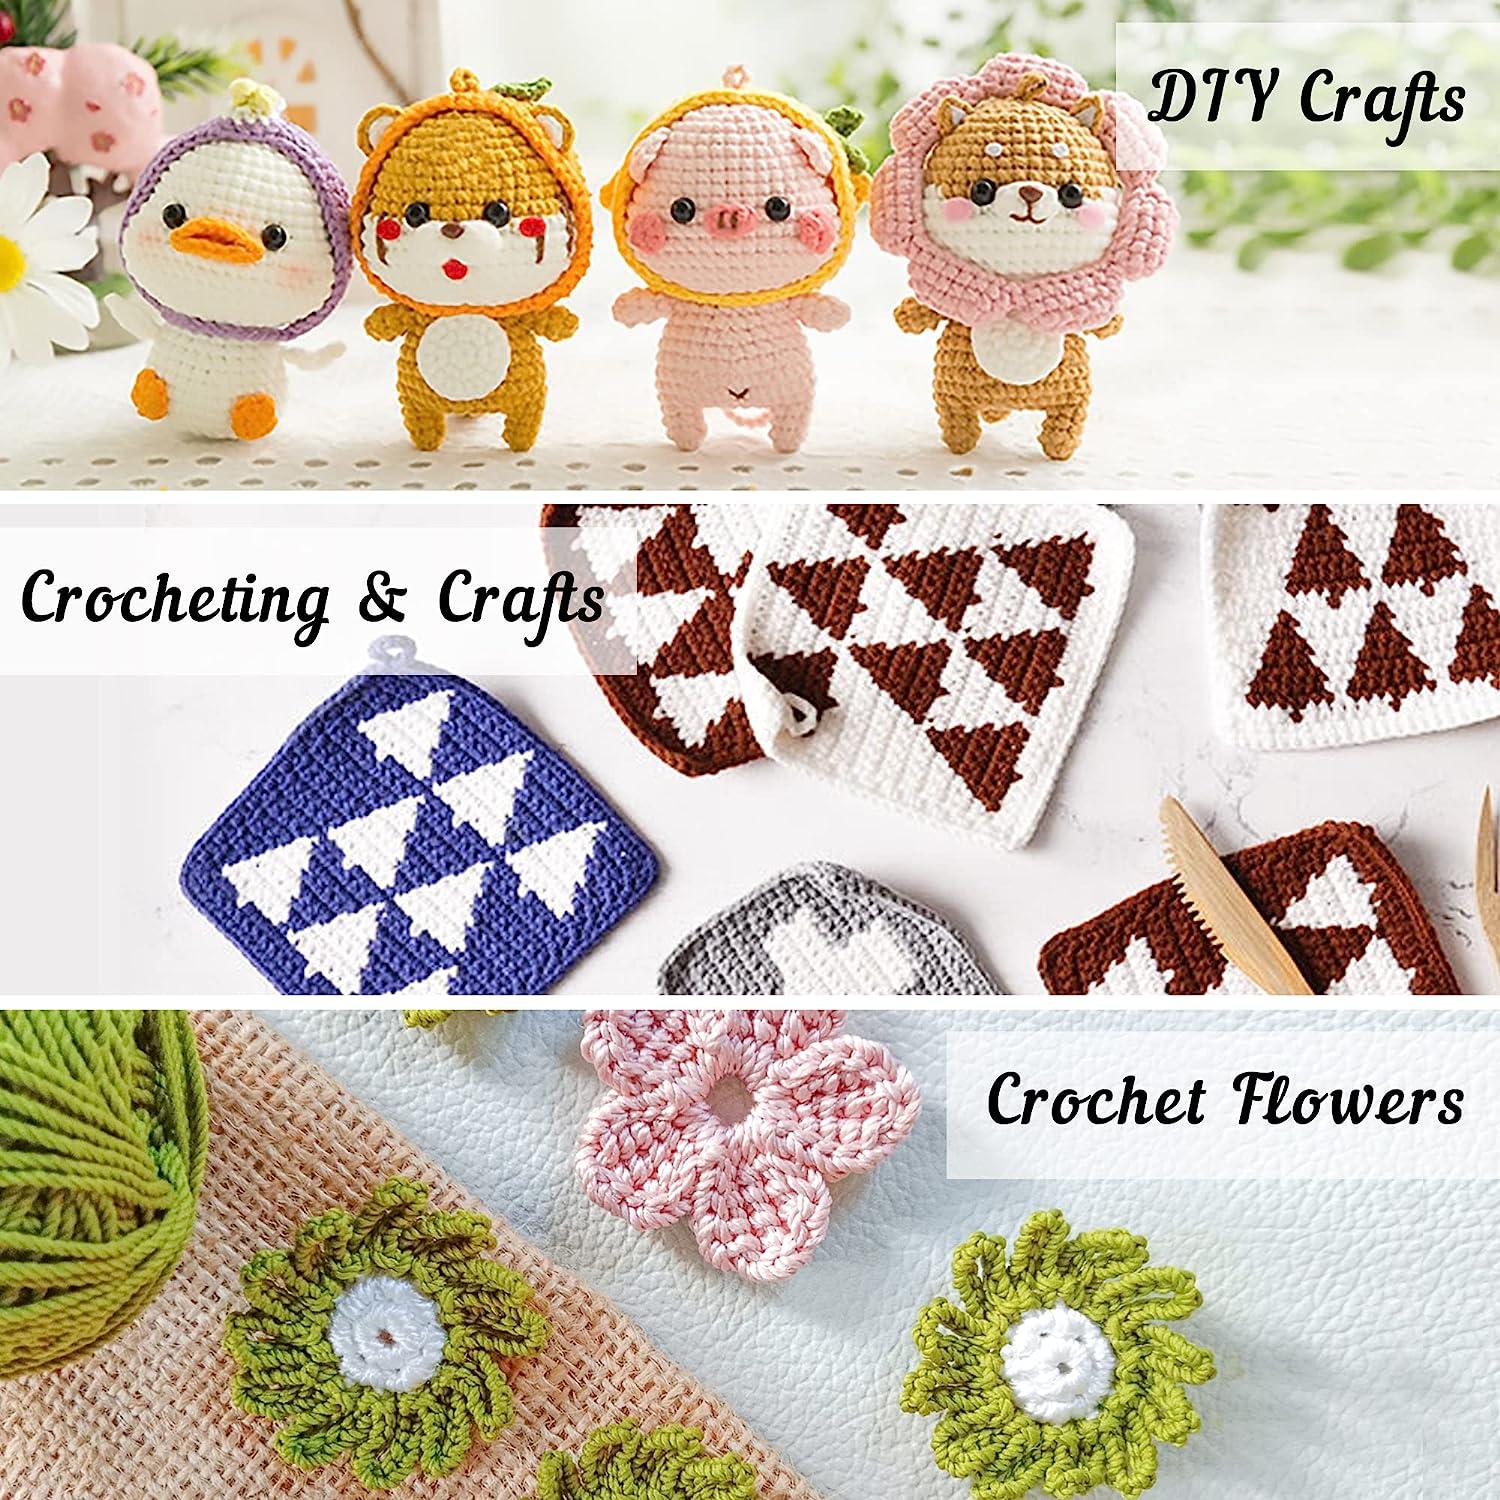  EXCEART 1 Set Yarn Needles for Knitting Crochet Tulip Kit Yarn  Starter Kit Knitting Kit for Beginners Flowers Knitting Kit Suits for Kids  White Yarn Preserved Flower Toddler Knitting Yarn